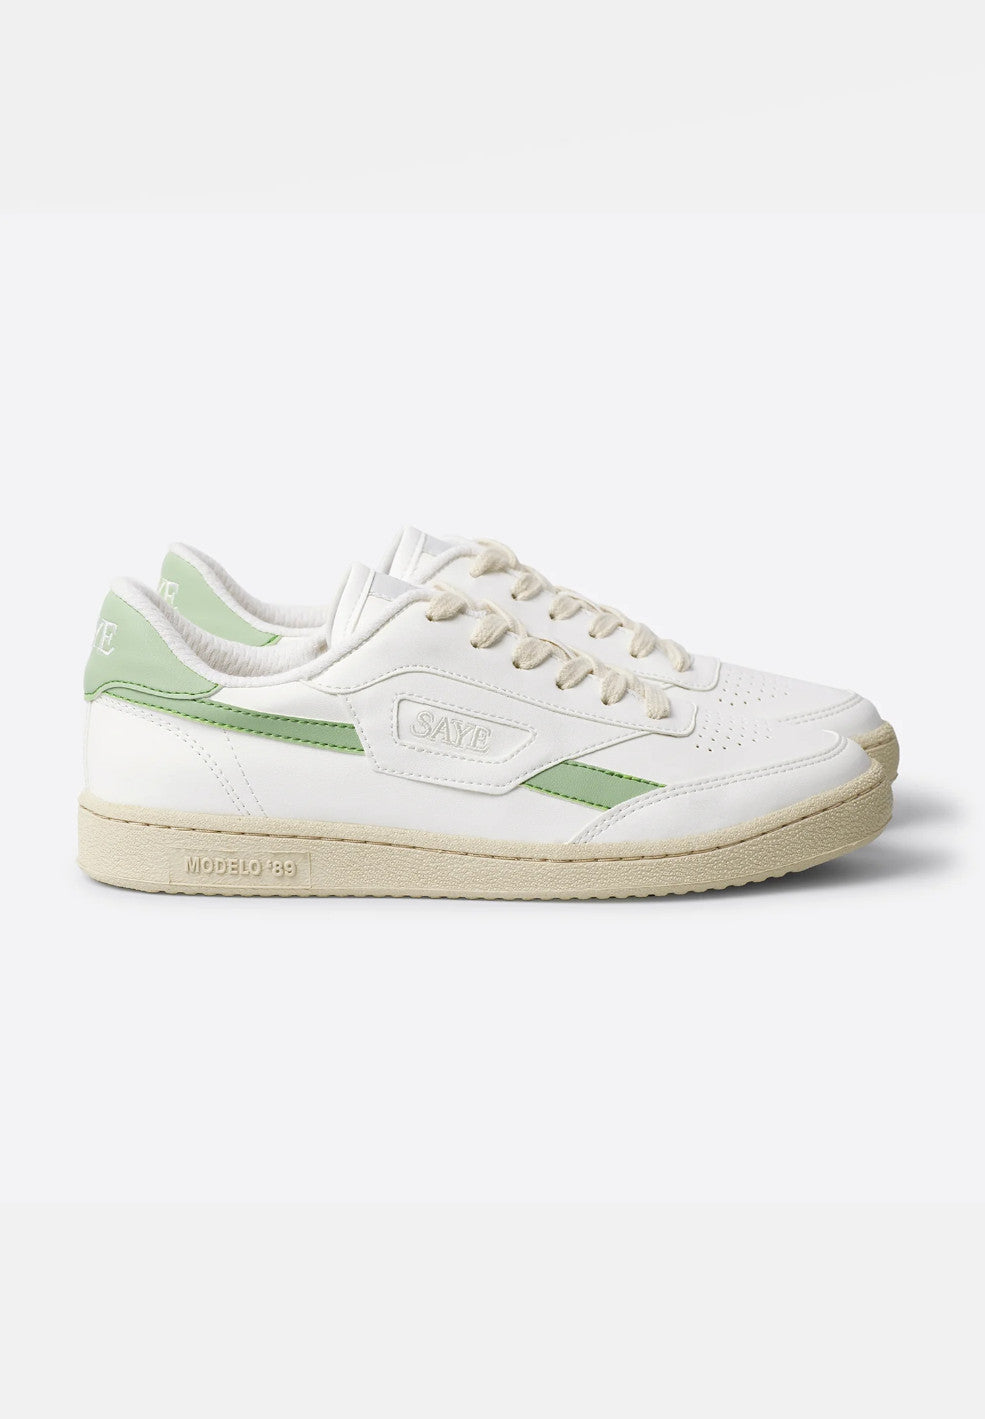 sneaker modelo '89 vegan lime